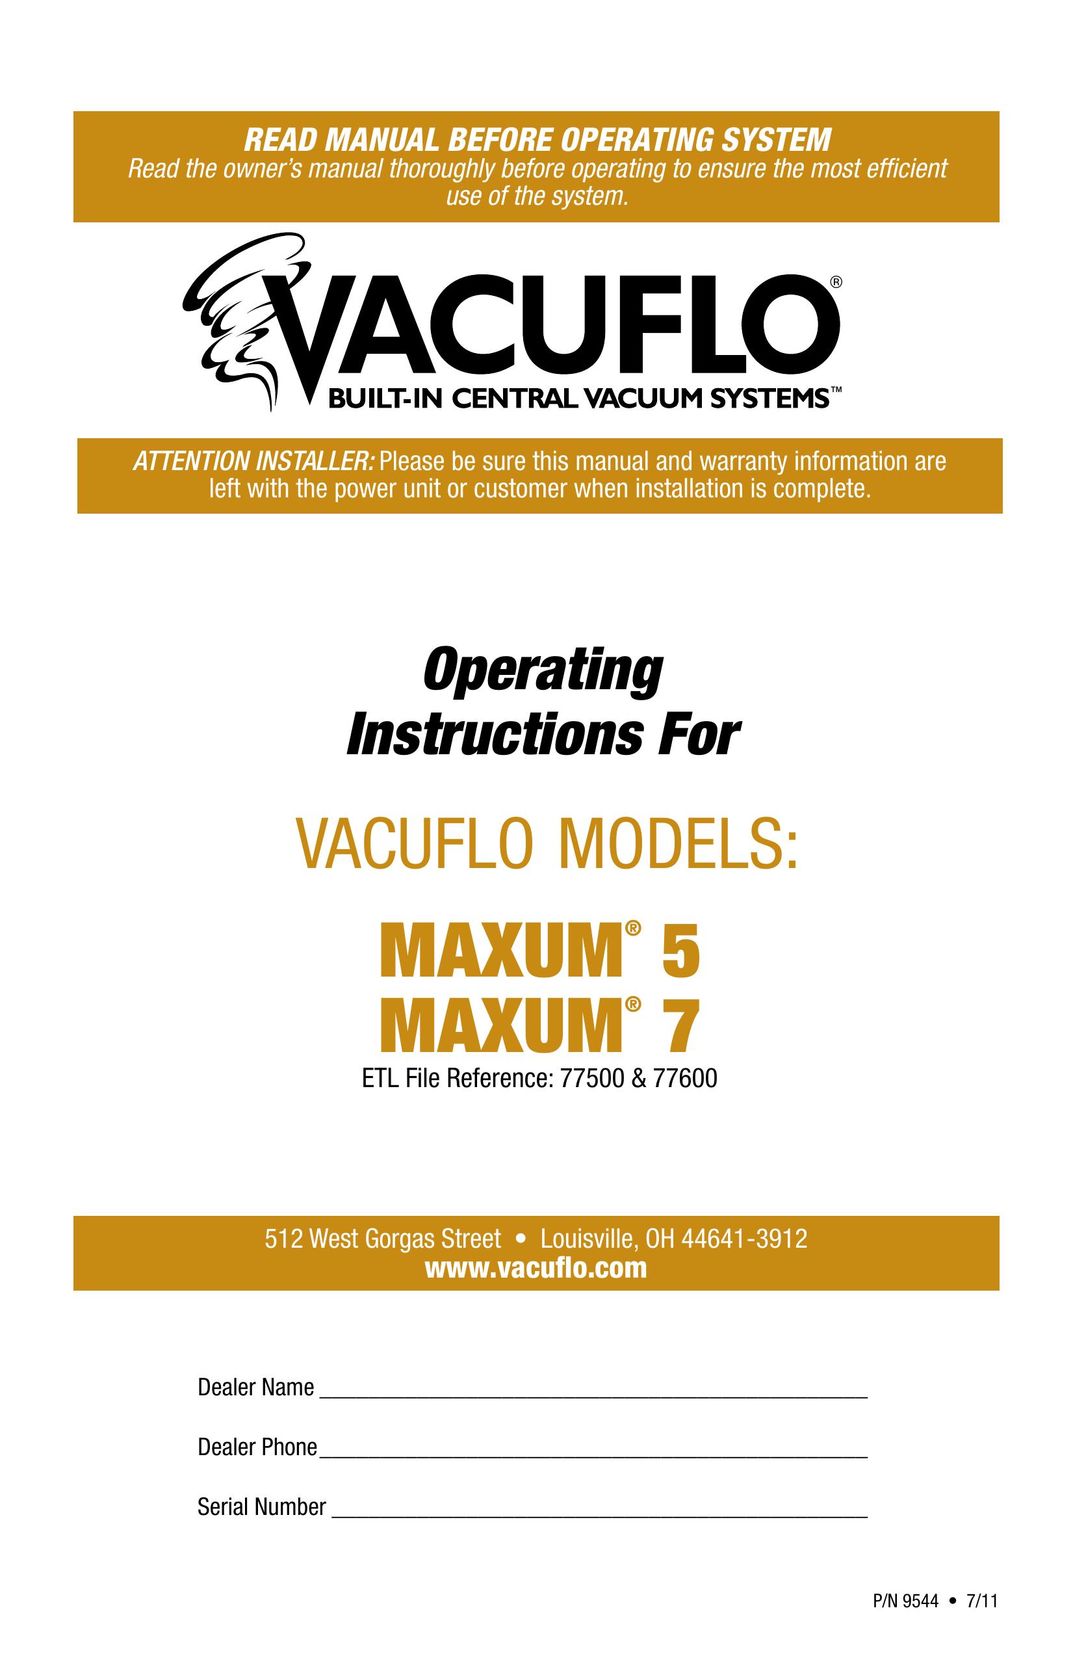 Vacuflo MAXUM 5 Vacuum Cleaner User Manual